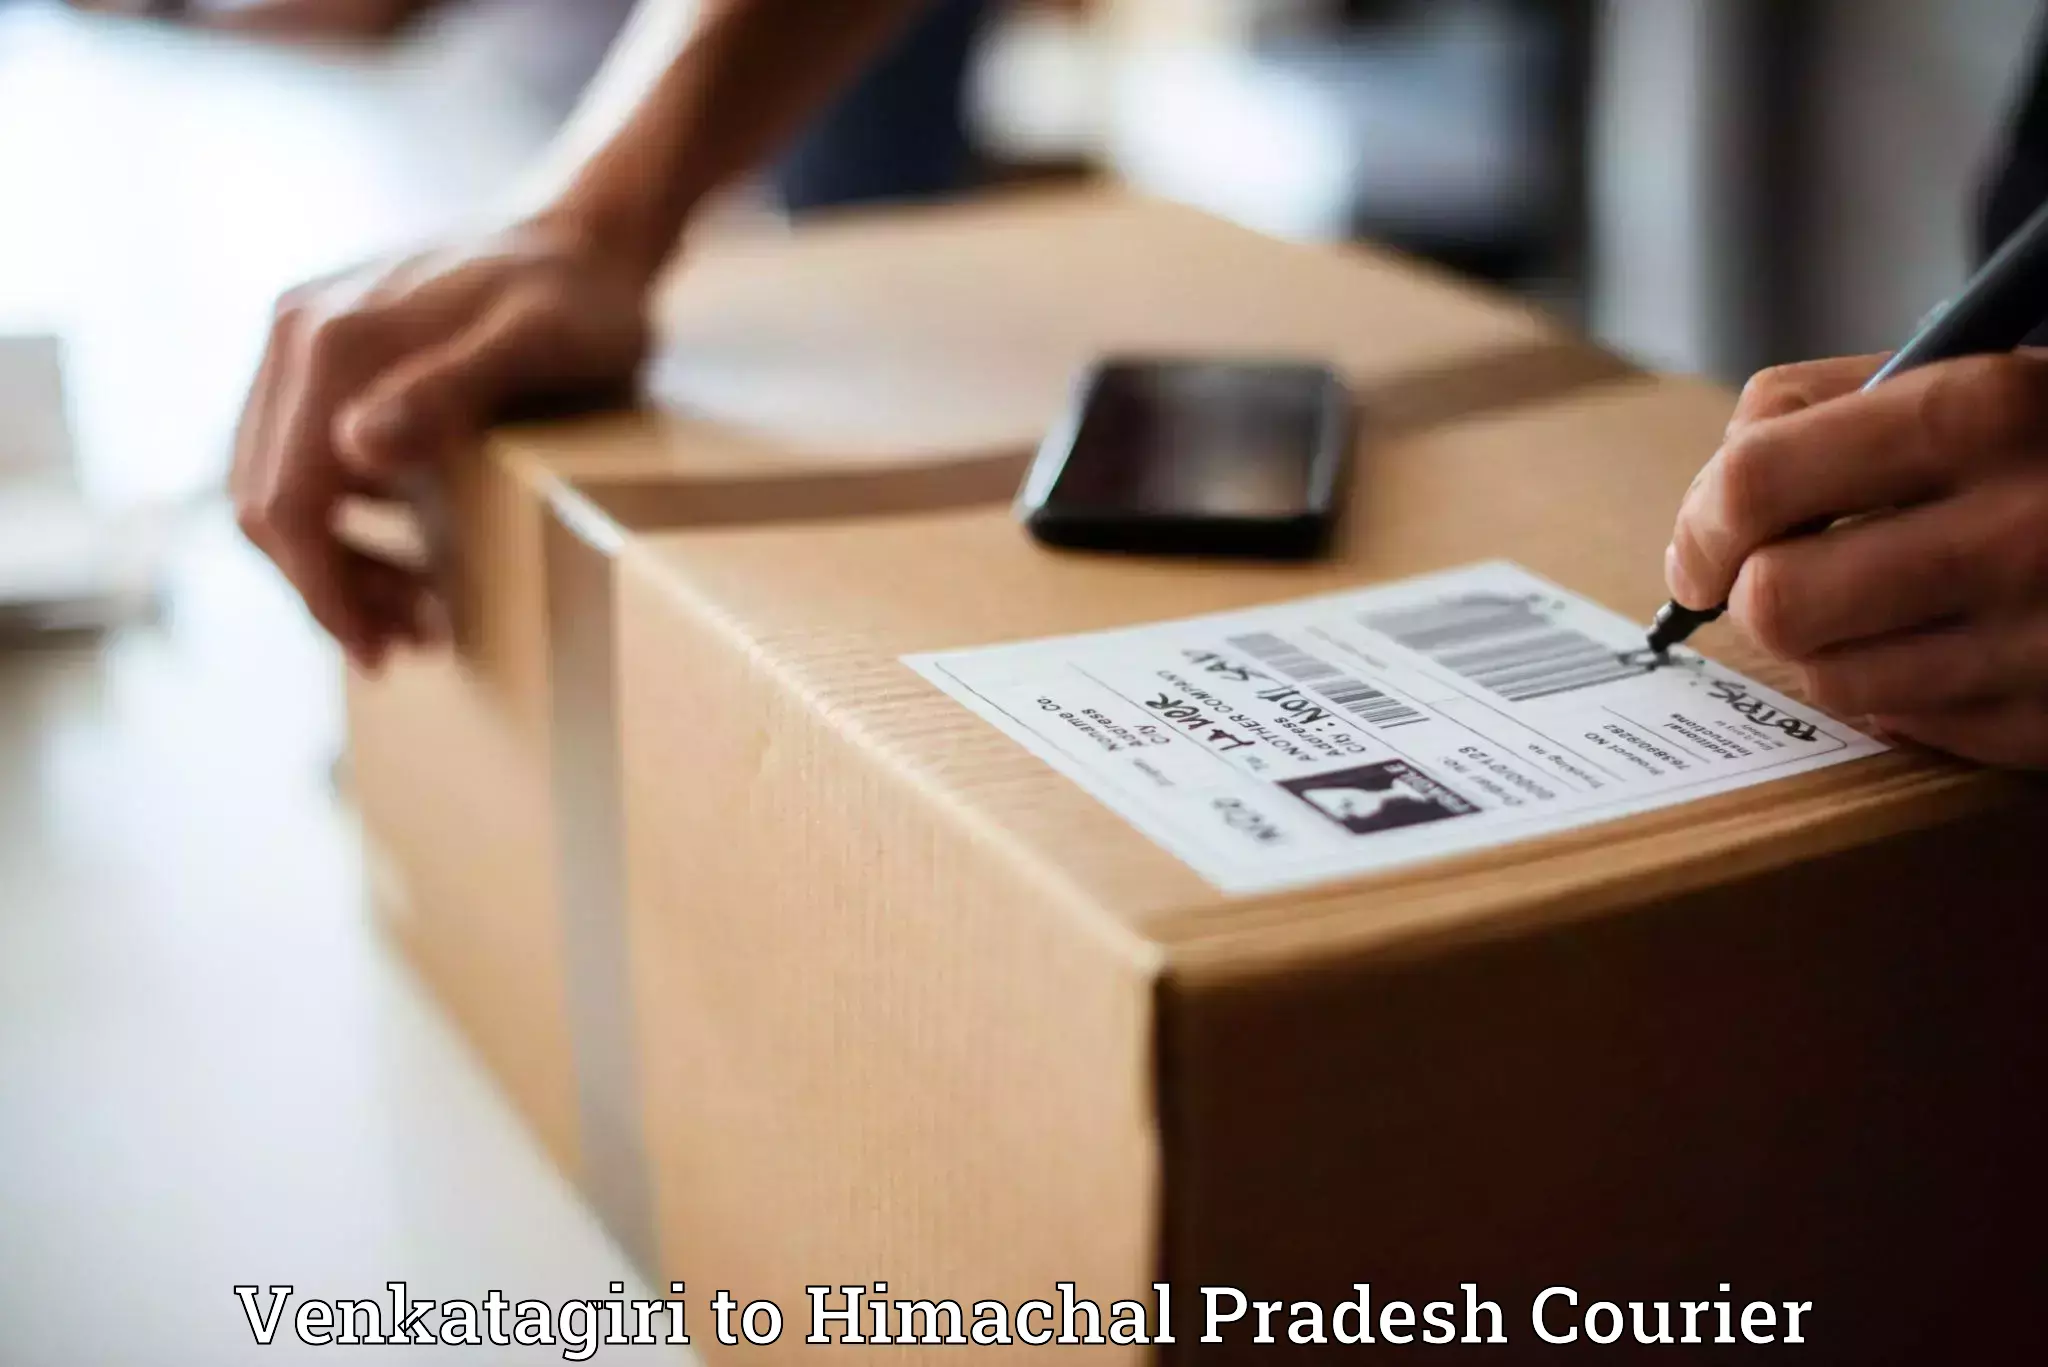 Small parcel delivery in Venkatagiri to Nerwa